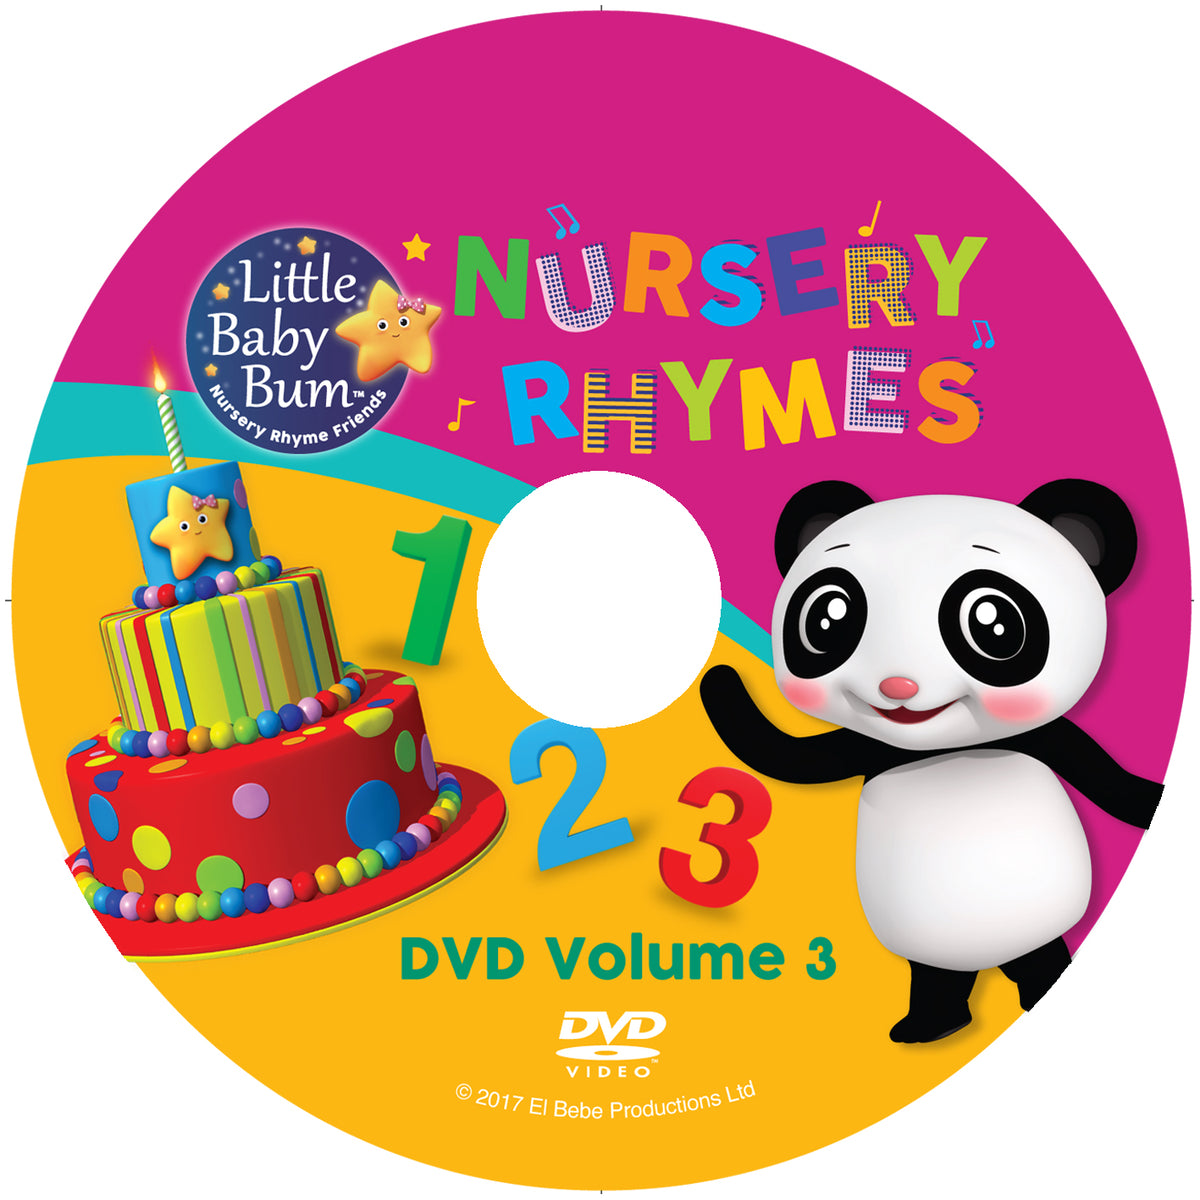 Volume 3 Nursery Rhymes – LBB DVDs